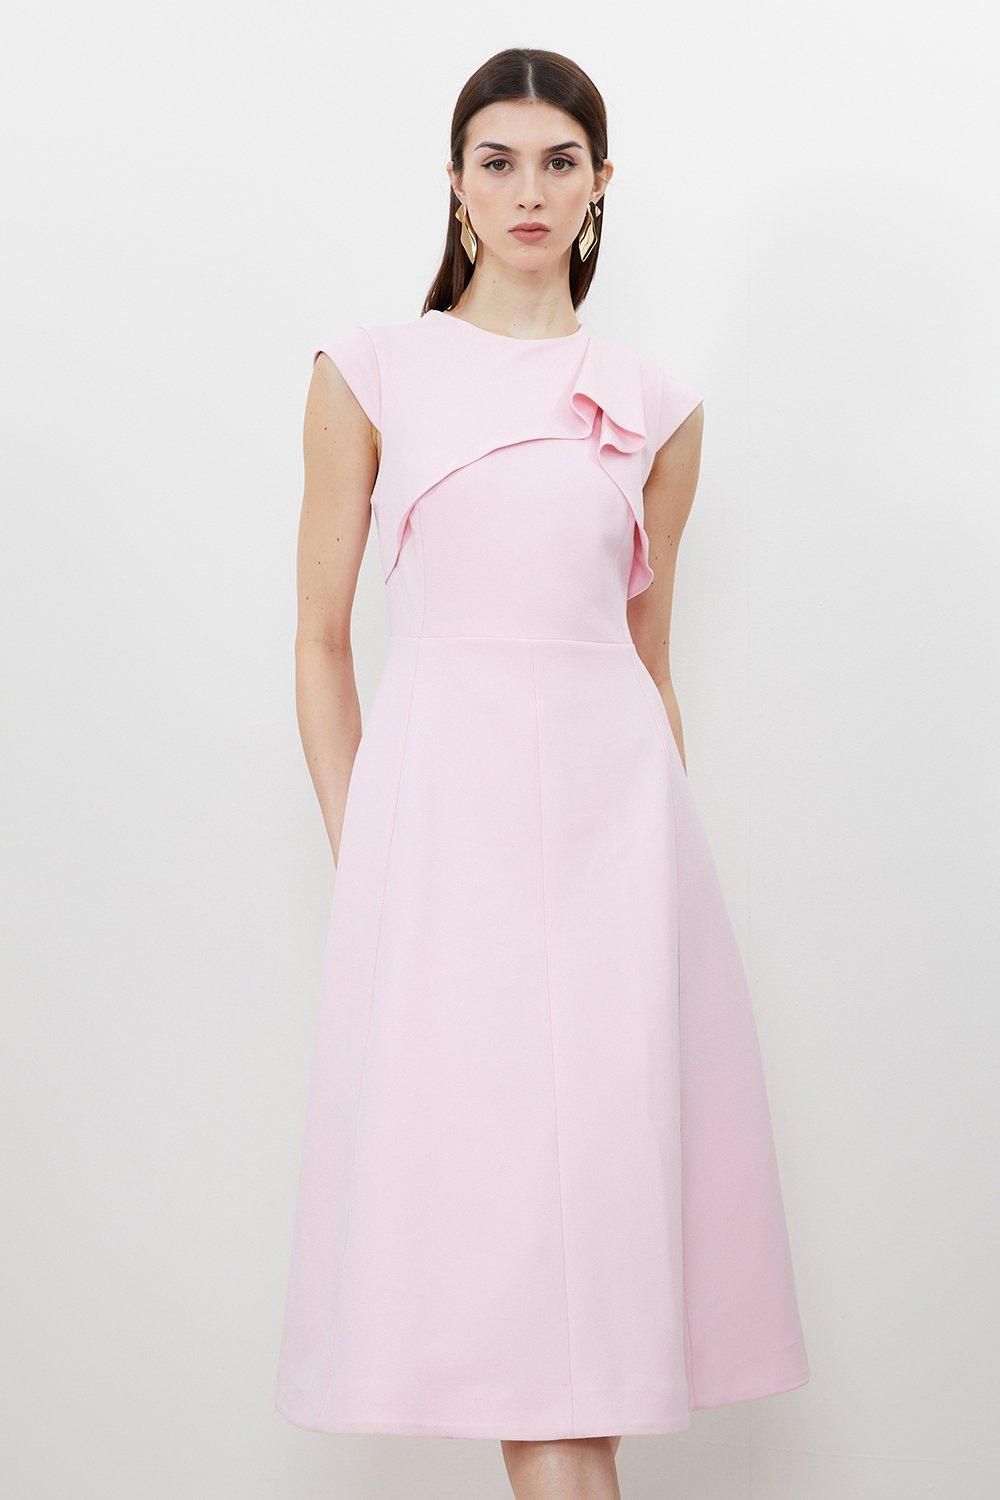 Tailored Crepe Drape Shoulder Full Skirt Midi Dress | Karen Millen UK + IE + DE + NL